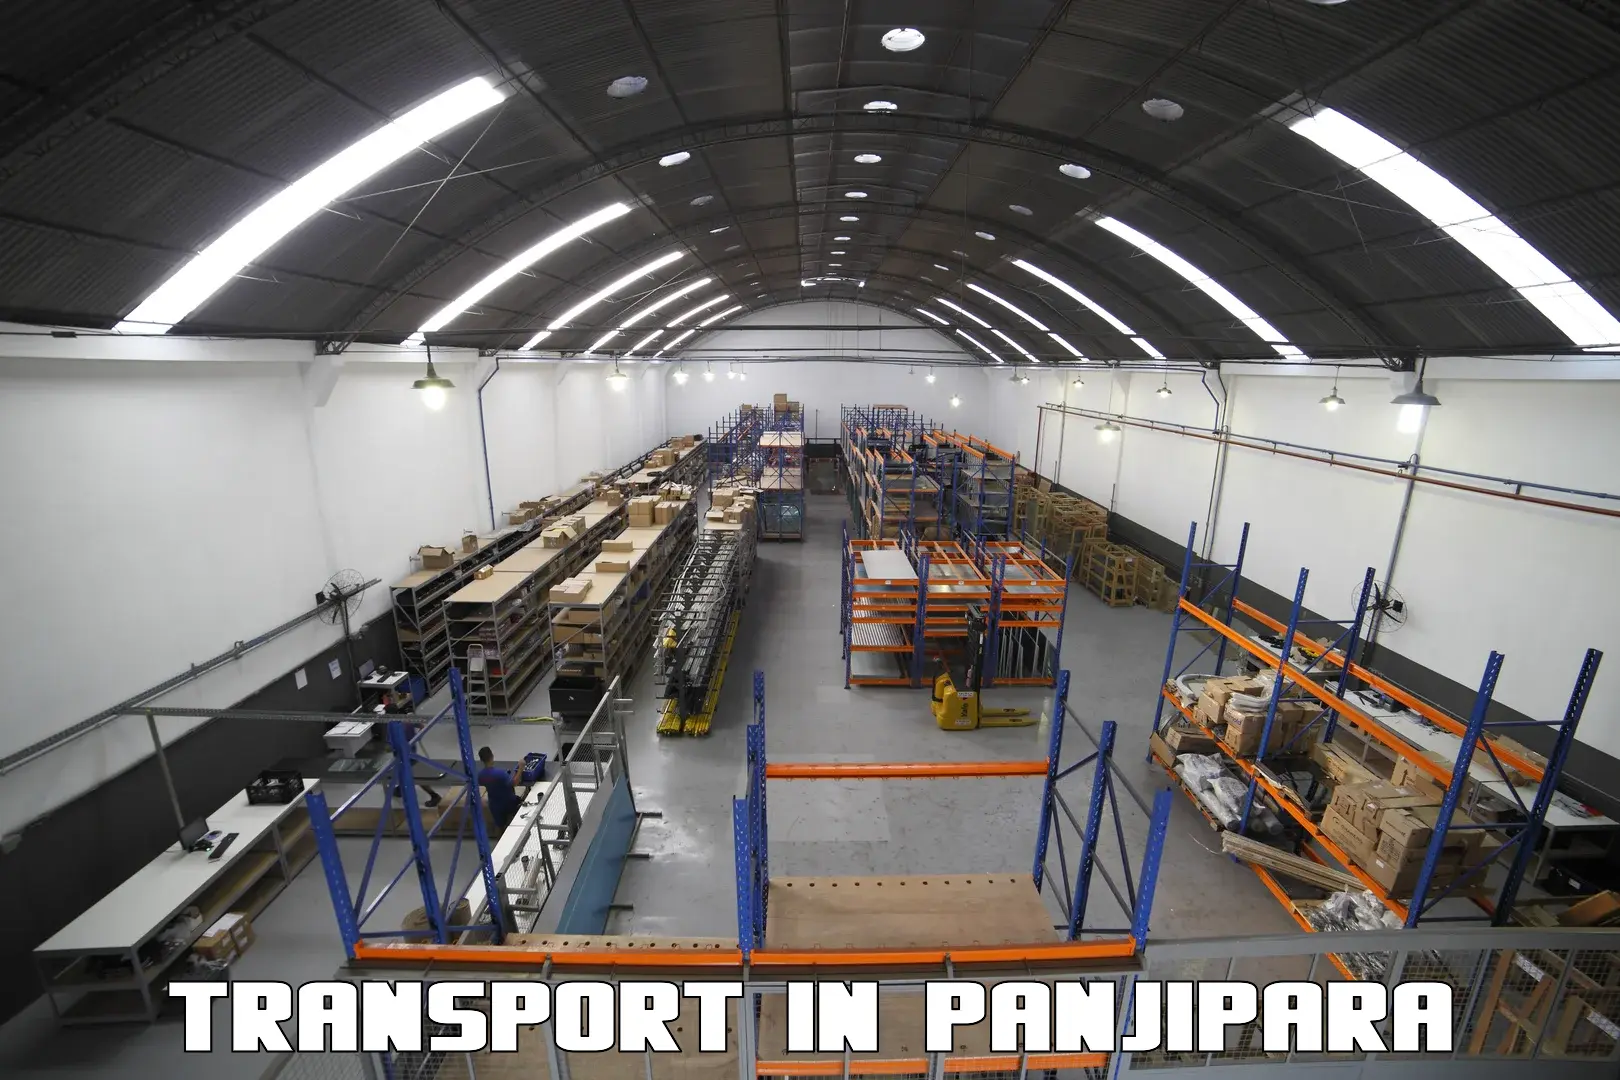 Furniture transport service in Panjipara